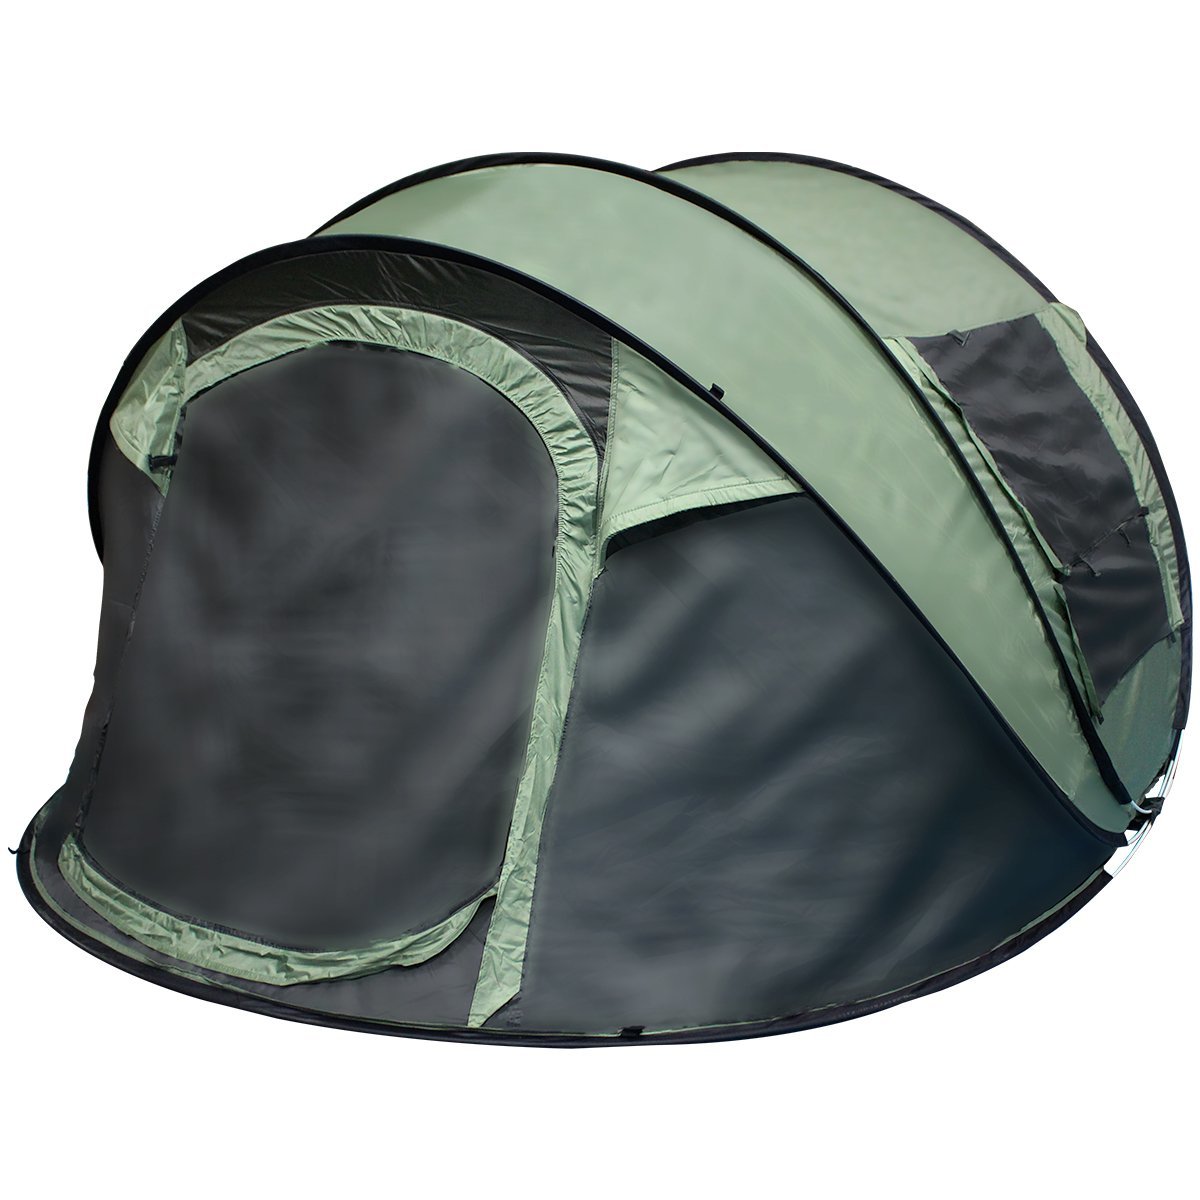 【新品即納】 ワンタッチ式 ドーム型 テント 3人から4人用！ キャンプ アウトドア ワンタッチテント ドームテント グリーン 緑 簡易